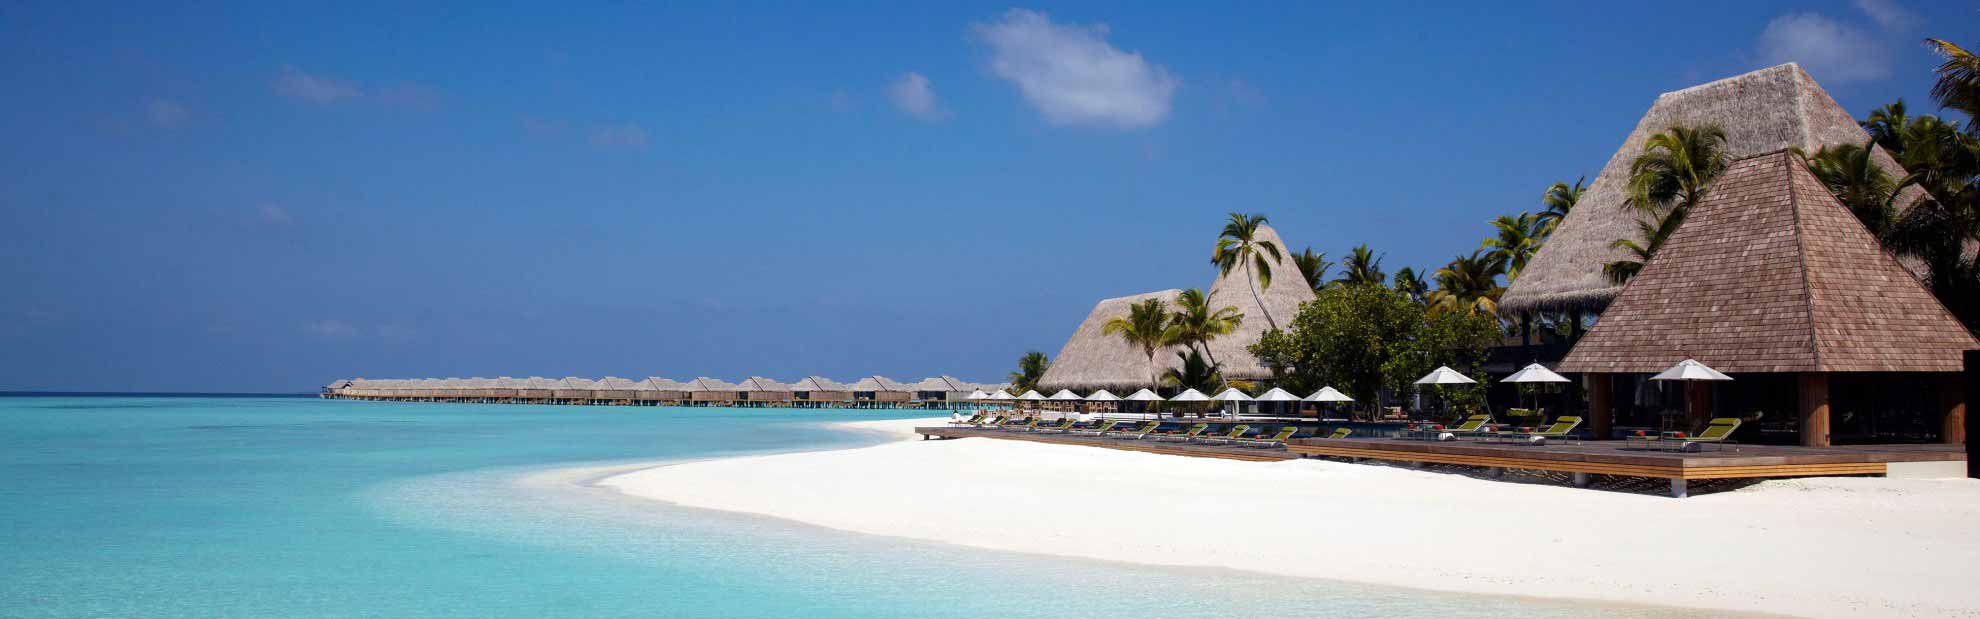 anantara-kihavah-villas-hotel-maldives-maldives